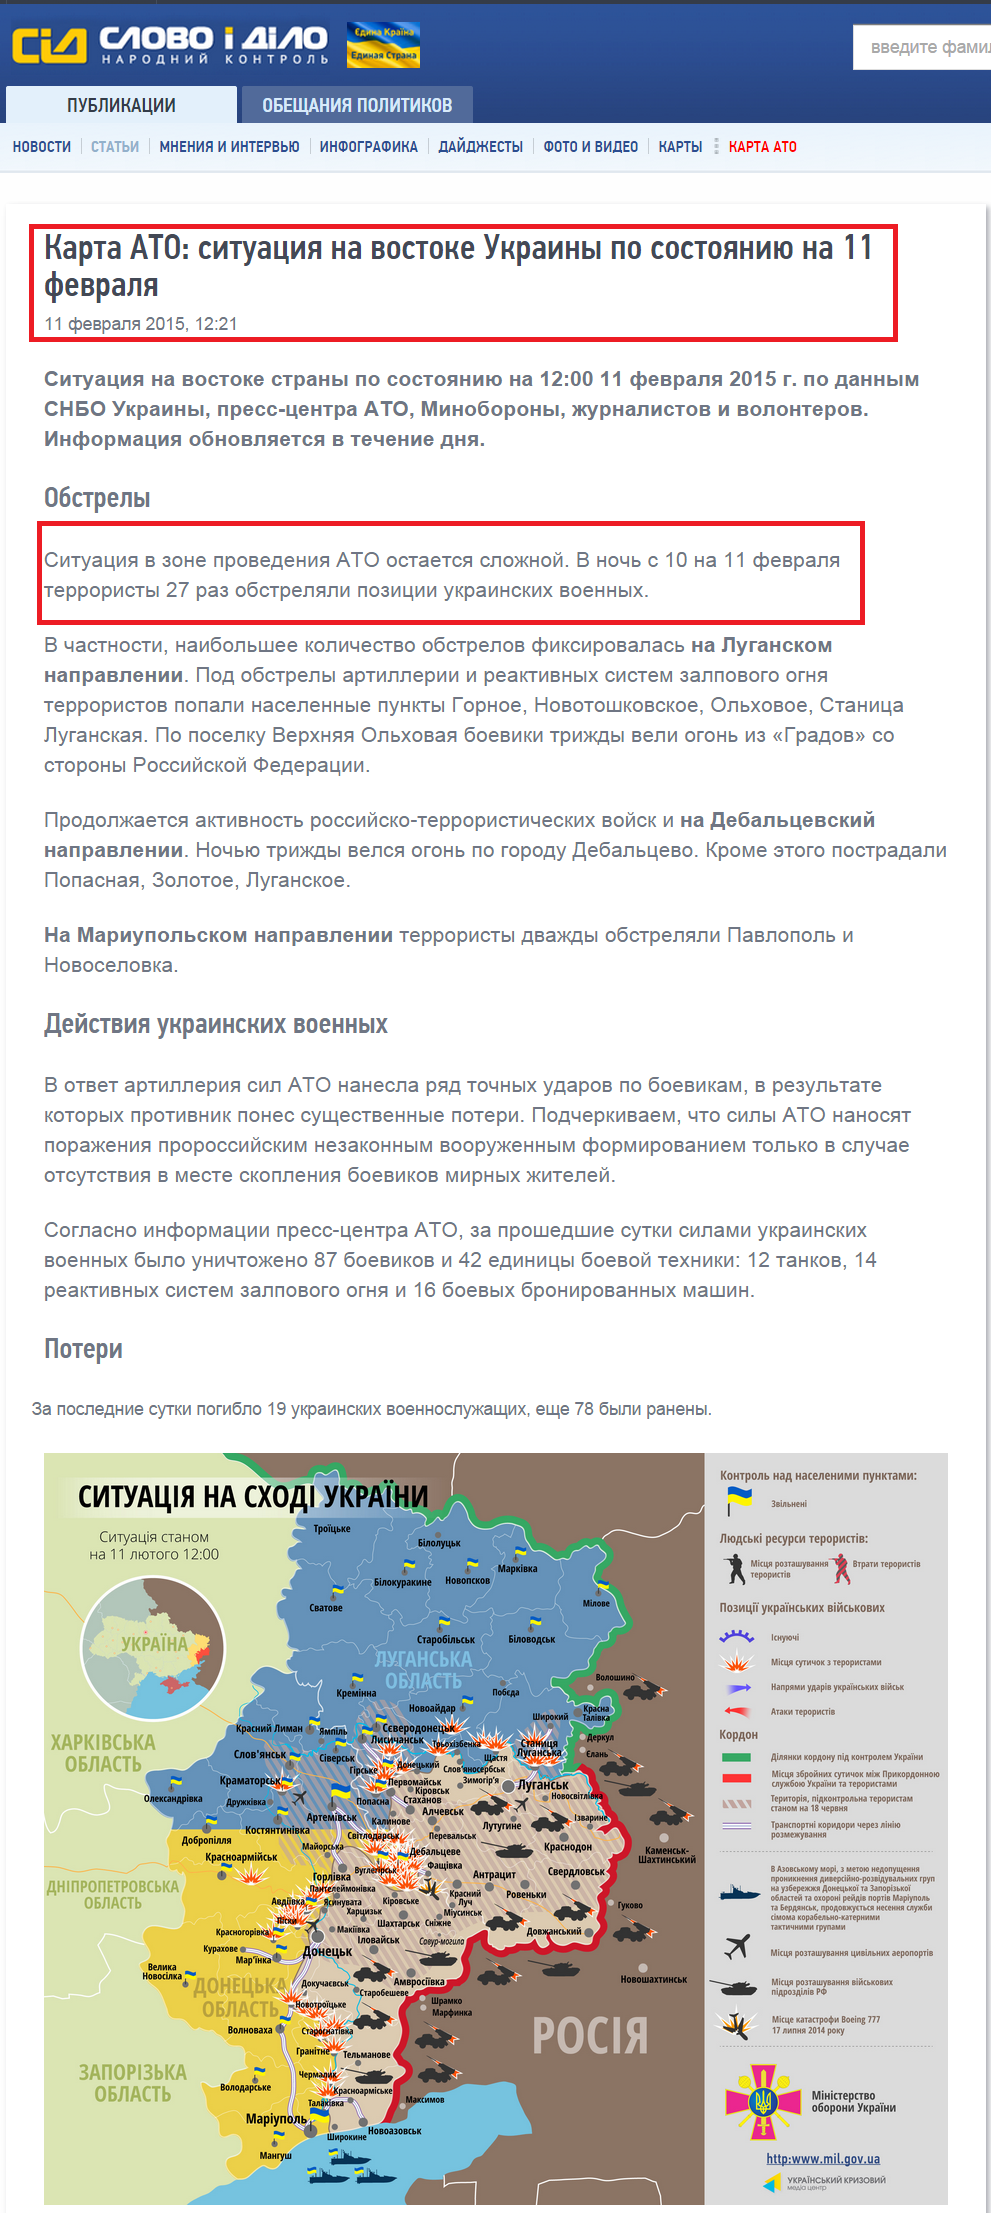 http://ru.slovoidilo.ua/articles/7545/2015-02-11/karta-ato-situaciya-na-vostoke-ukrainy-po-sostoyaniyu-na-11-fevralya.html